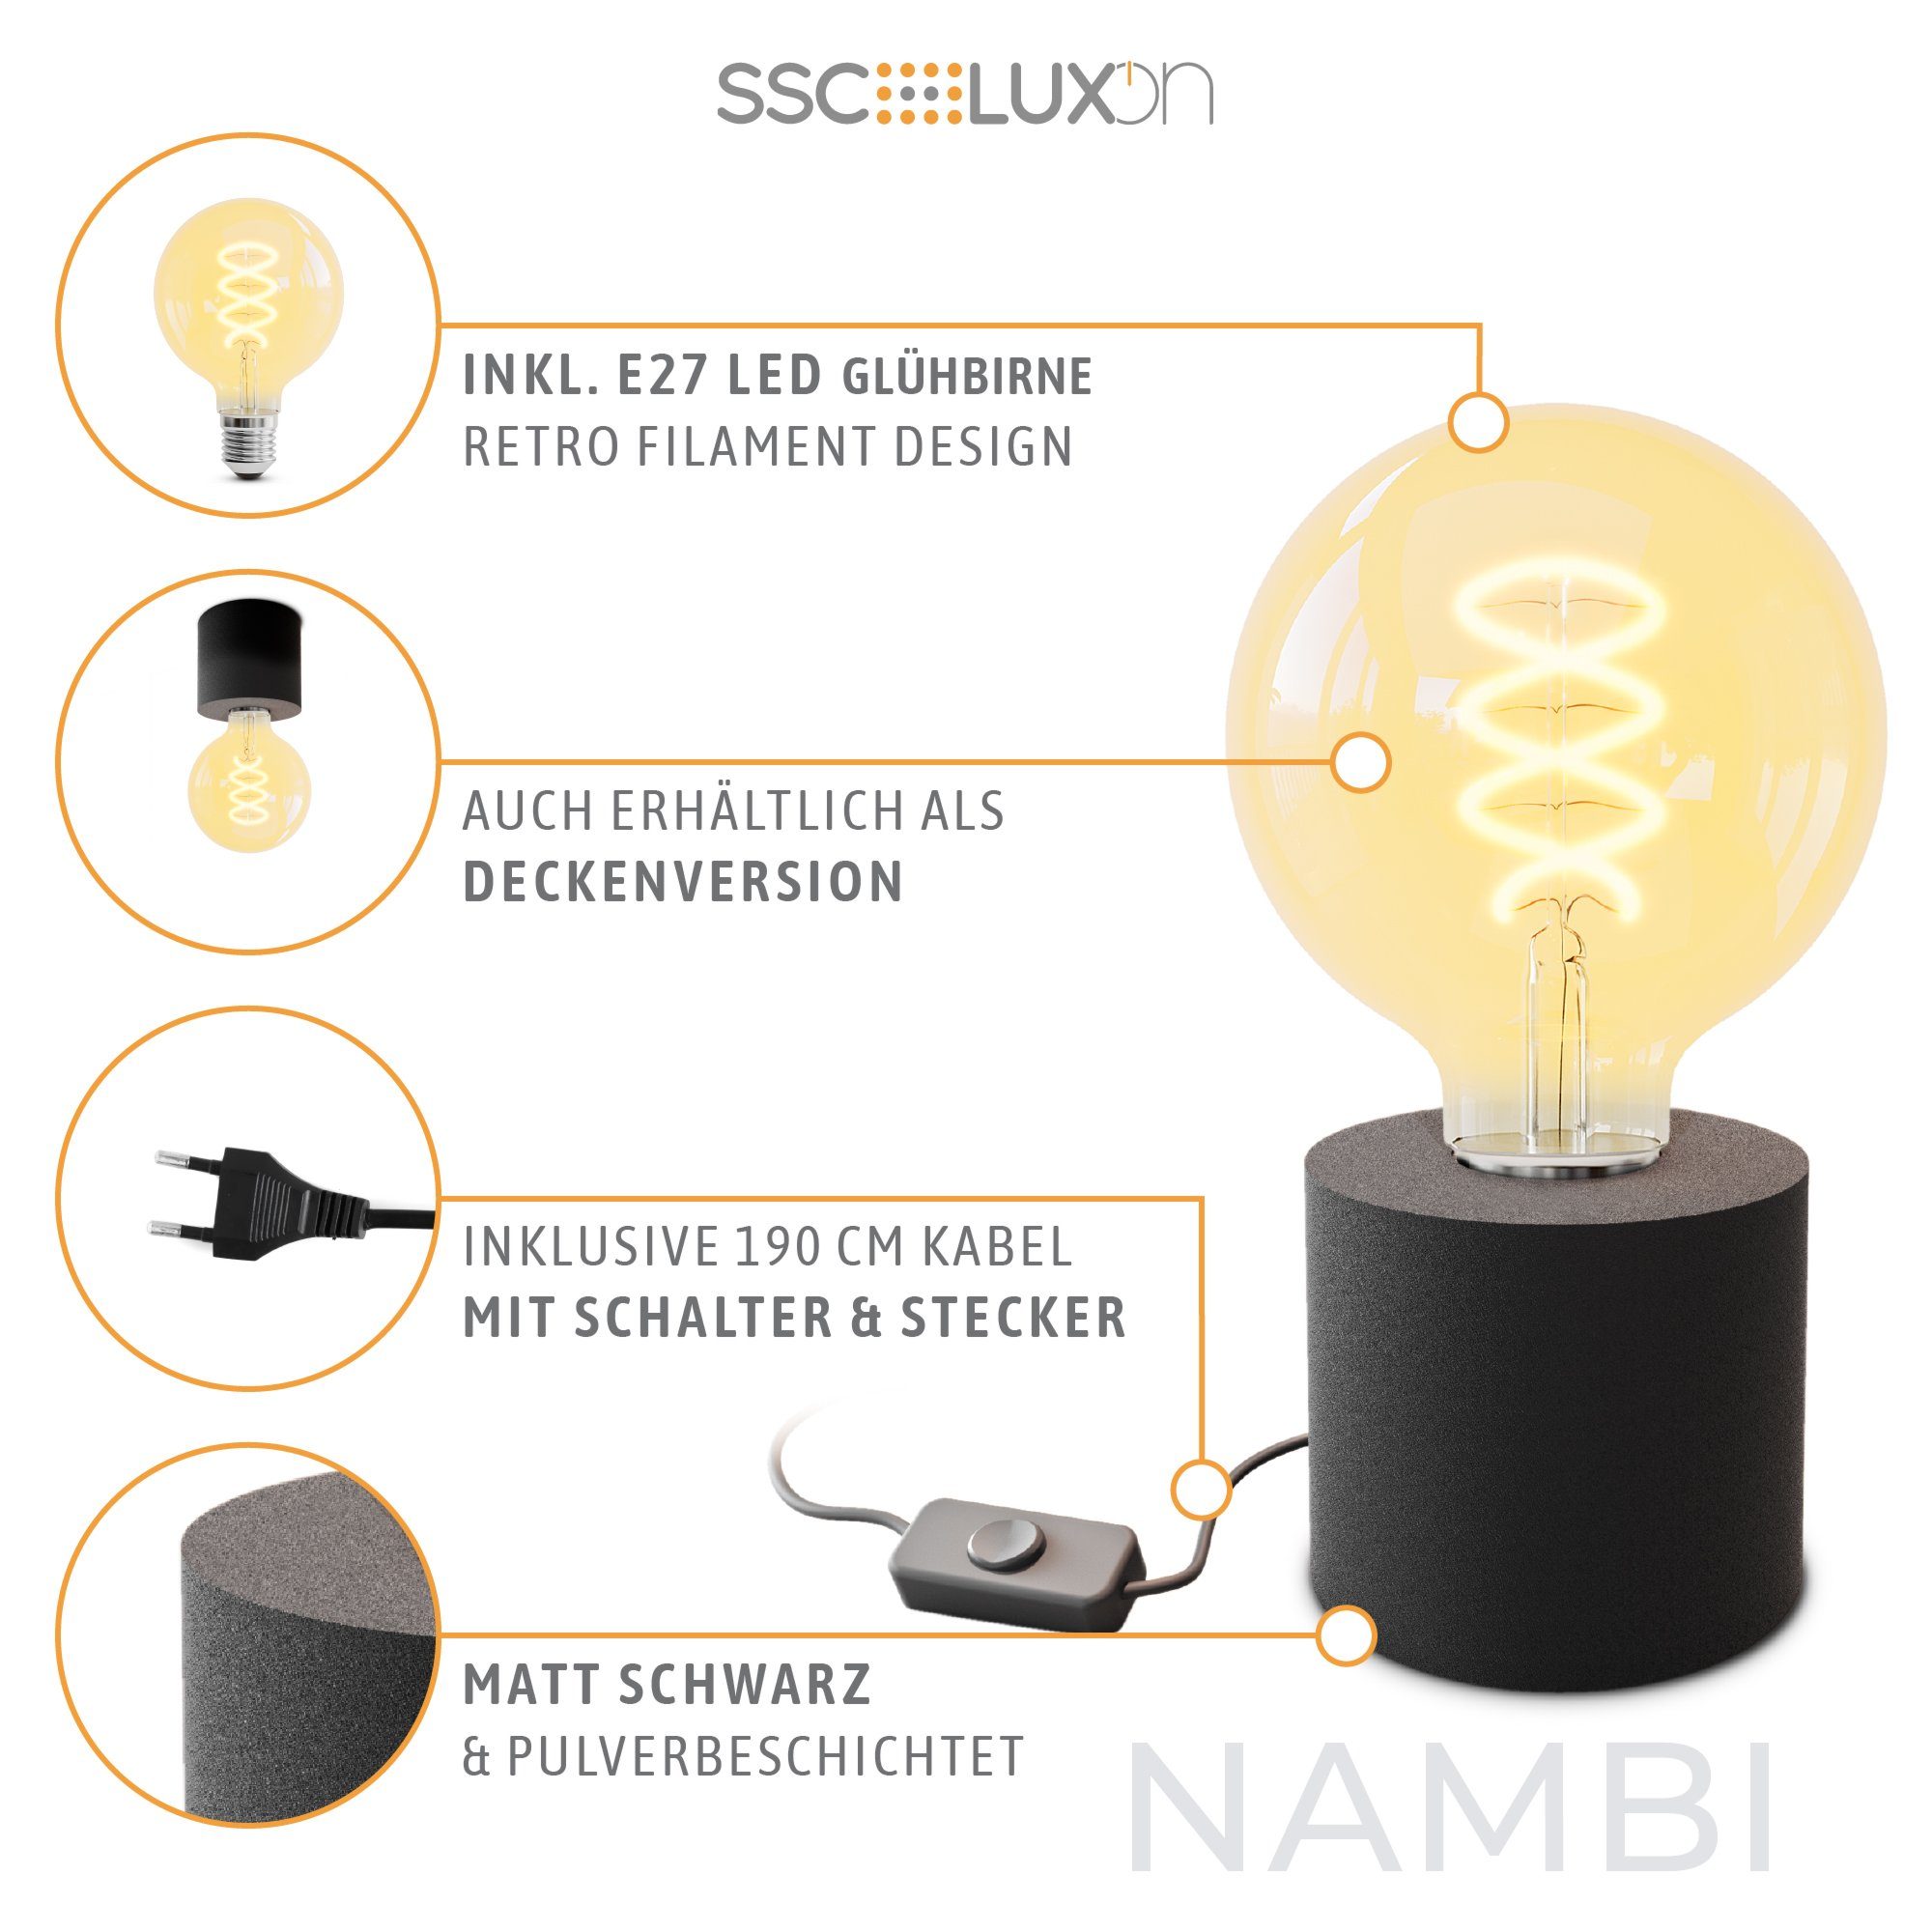 SSC-LUXon LED schwarz Tischlampe & Steckerkabel mit LED Bilderleuchte E27 Globe, Warmweiß Extra Wand- mit NAMBI